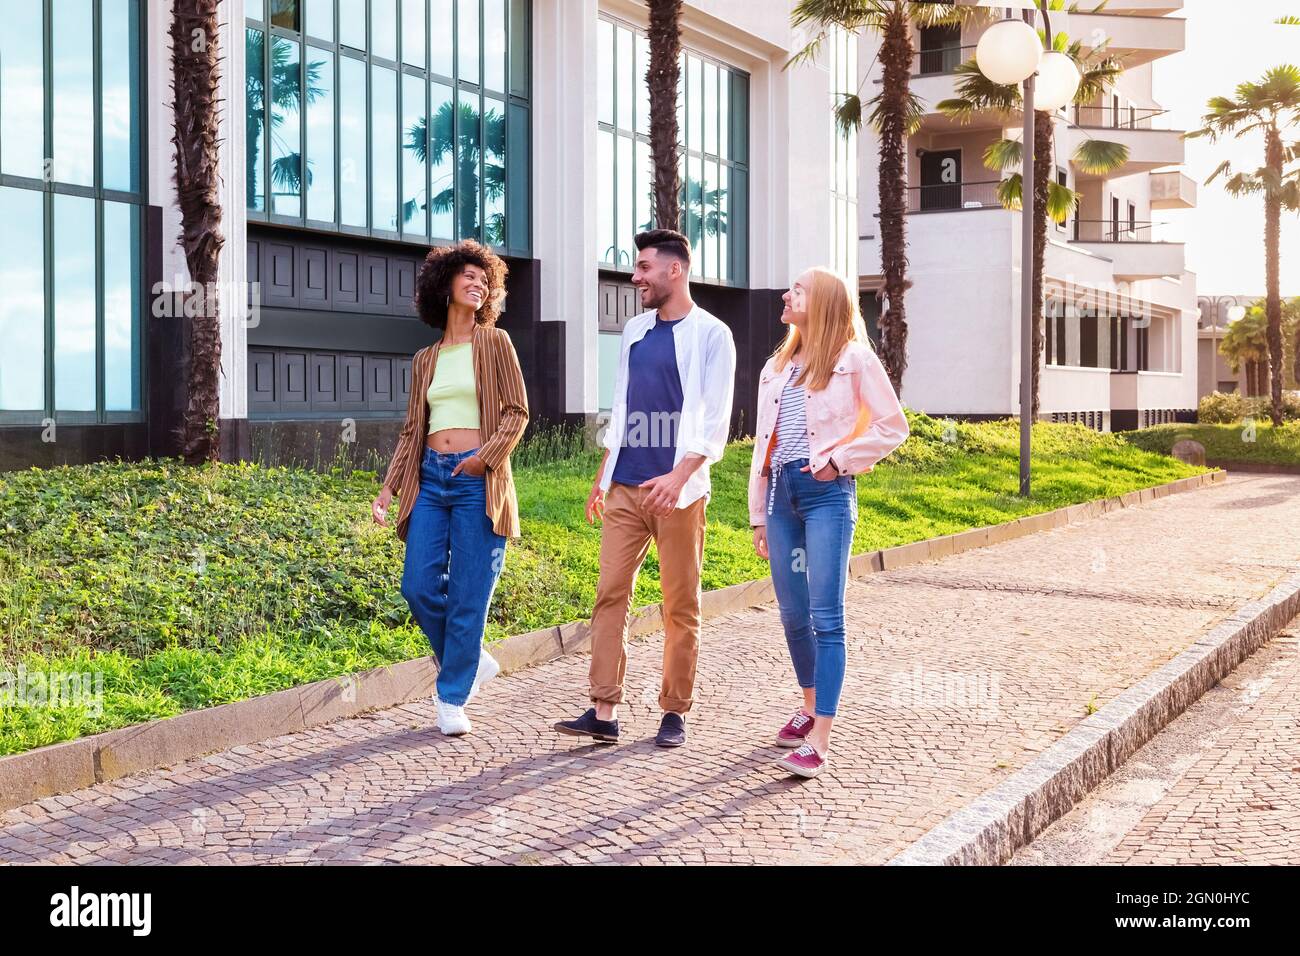 Corpo pieno di giovani studenti allegri multirazziali in abiti casual alla moda chiacchierando e ridendo amichevole mentre passeggi insieme sul marciapiede vicino mod Foto Stock